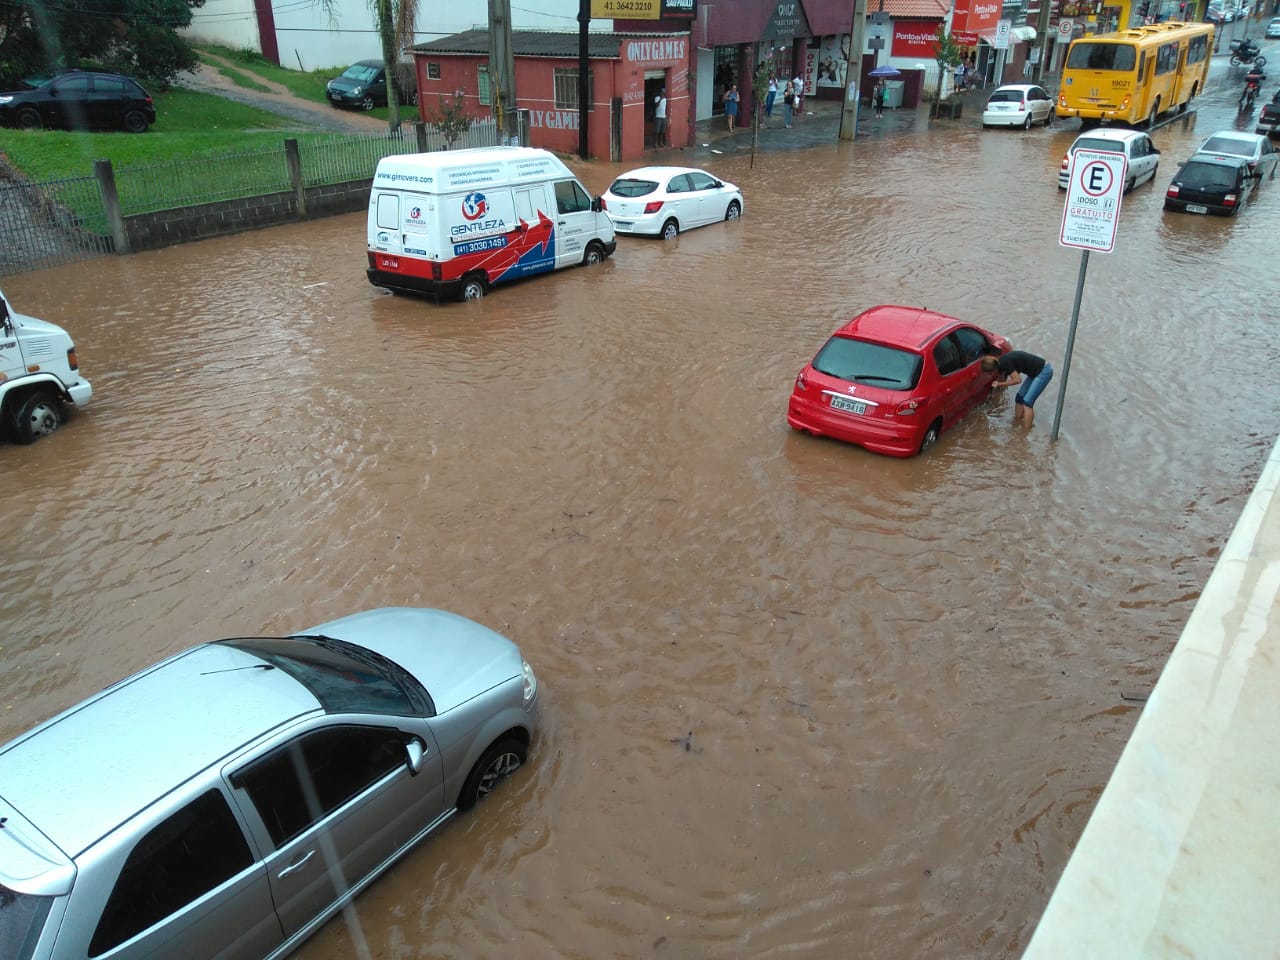  Com início de tornado, chuva forte alaga ruas de Araucária